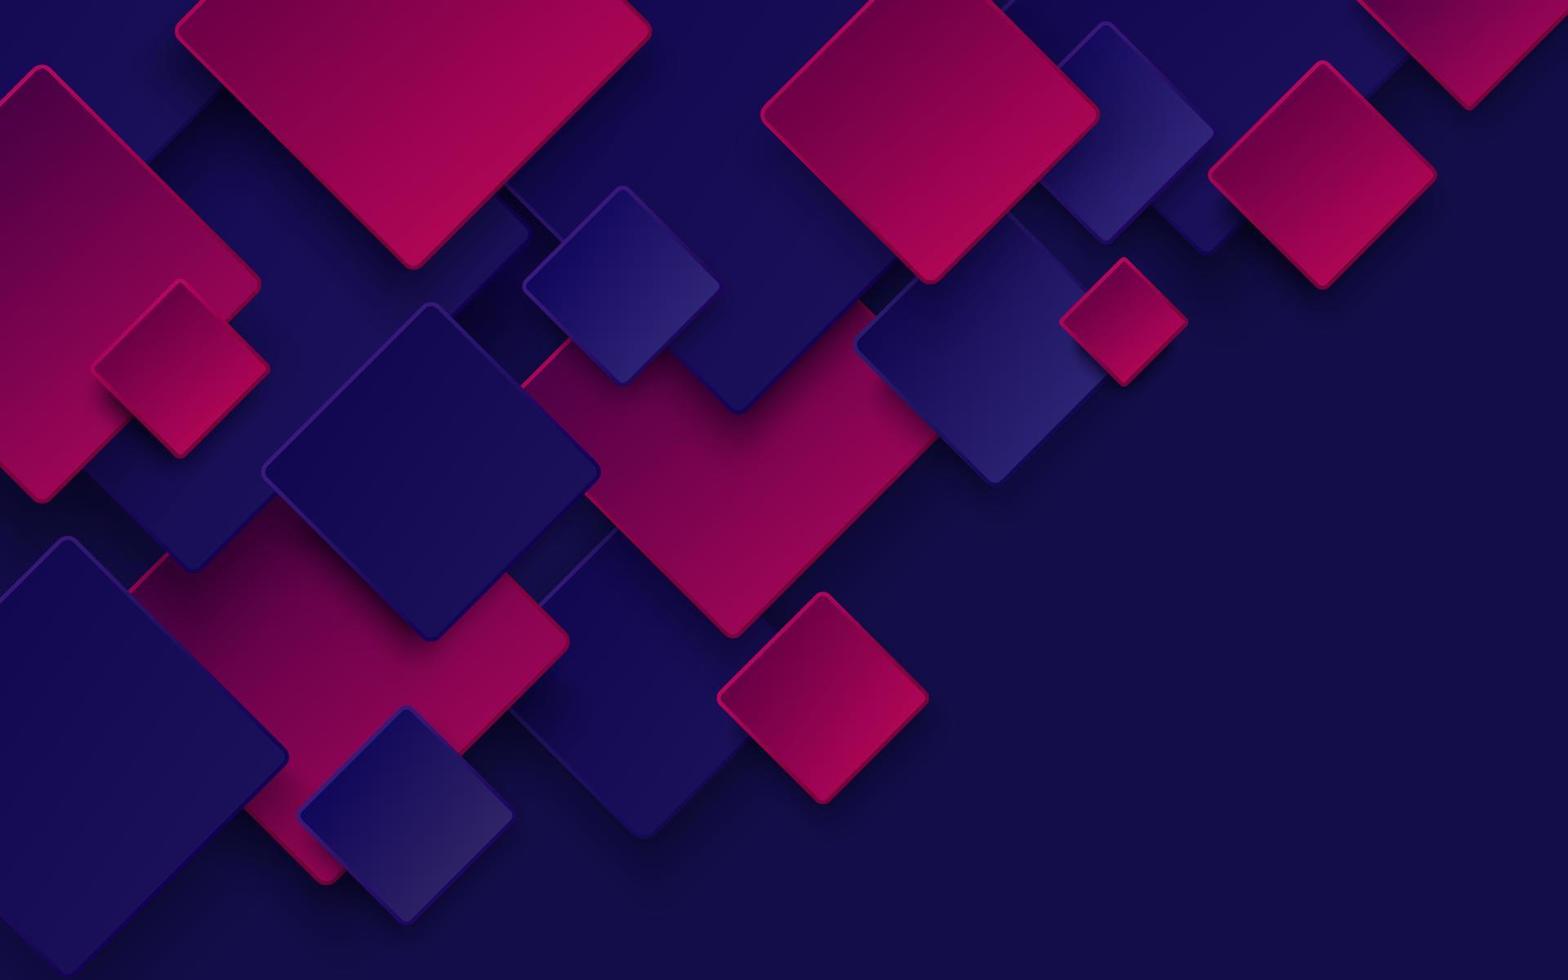 moderne donkerblauwe en roze paarse kleur vierkant overlap patroon op de achtergrond met schaduw. abstracte trendy kleur geometrische vorm met kopie ruimte. futuristisch en technologisch concept. vectoreps10. vector